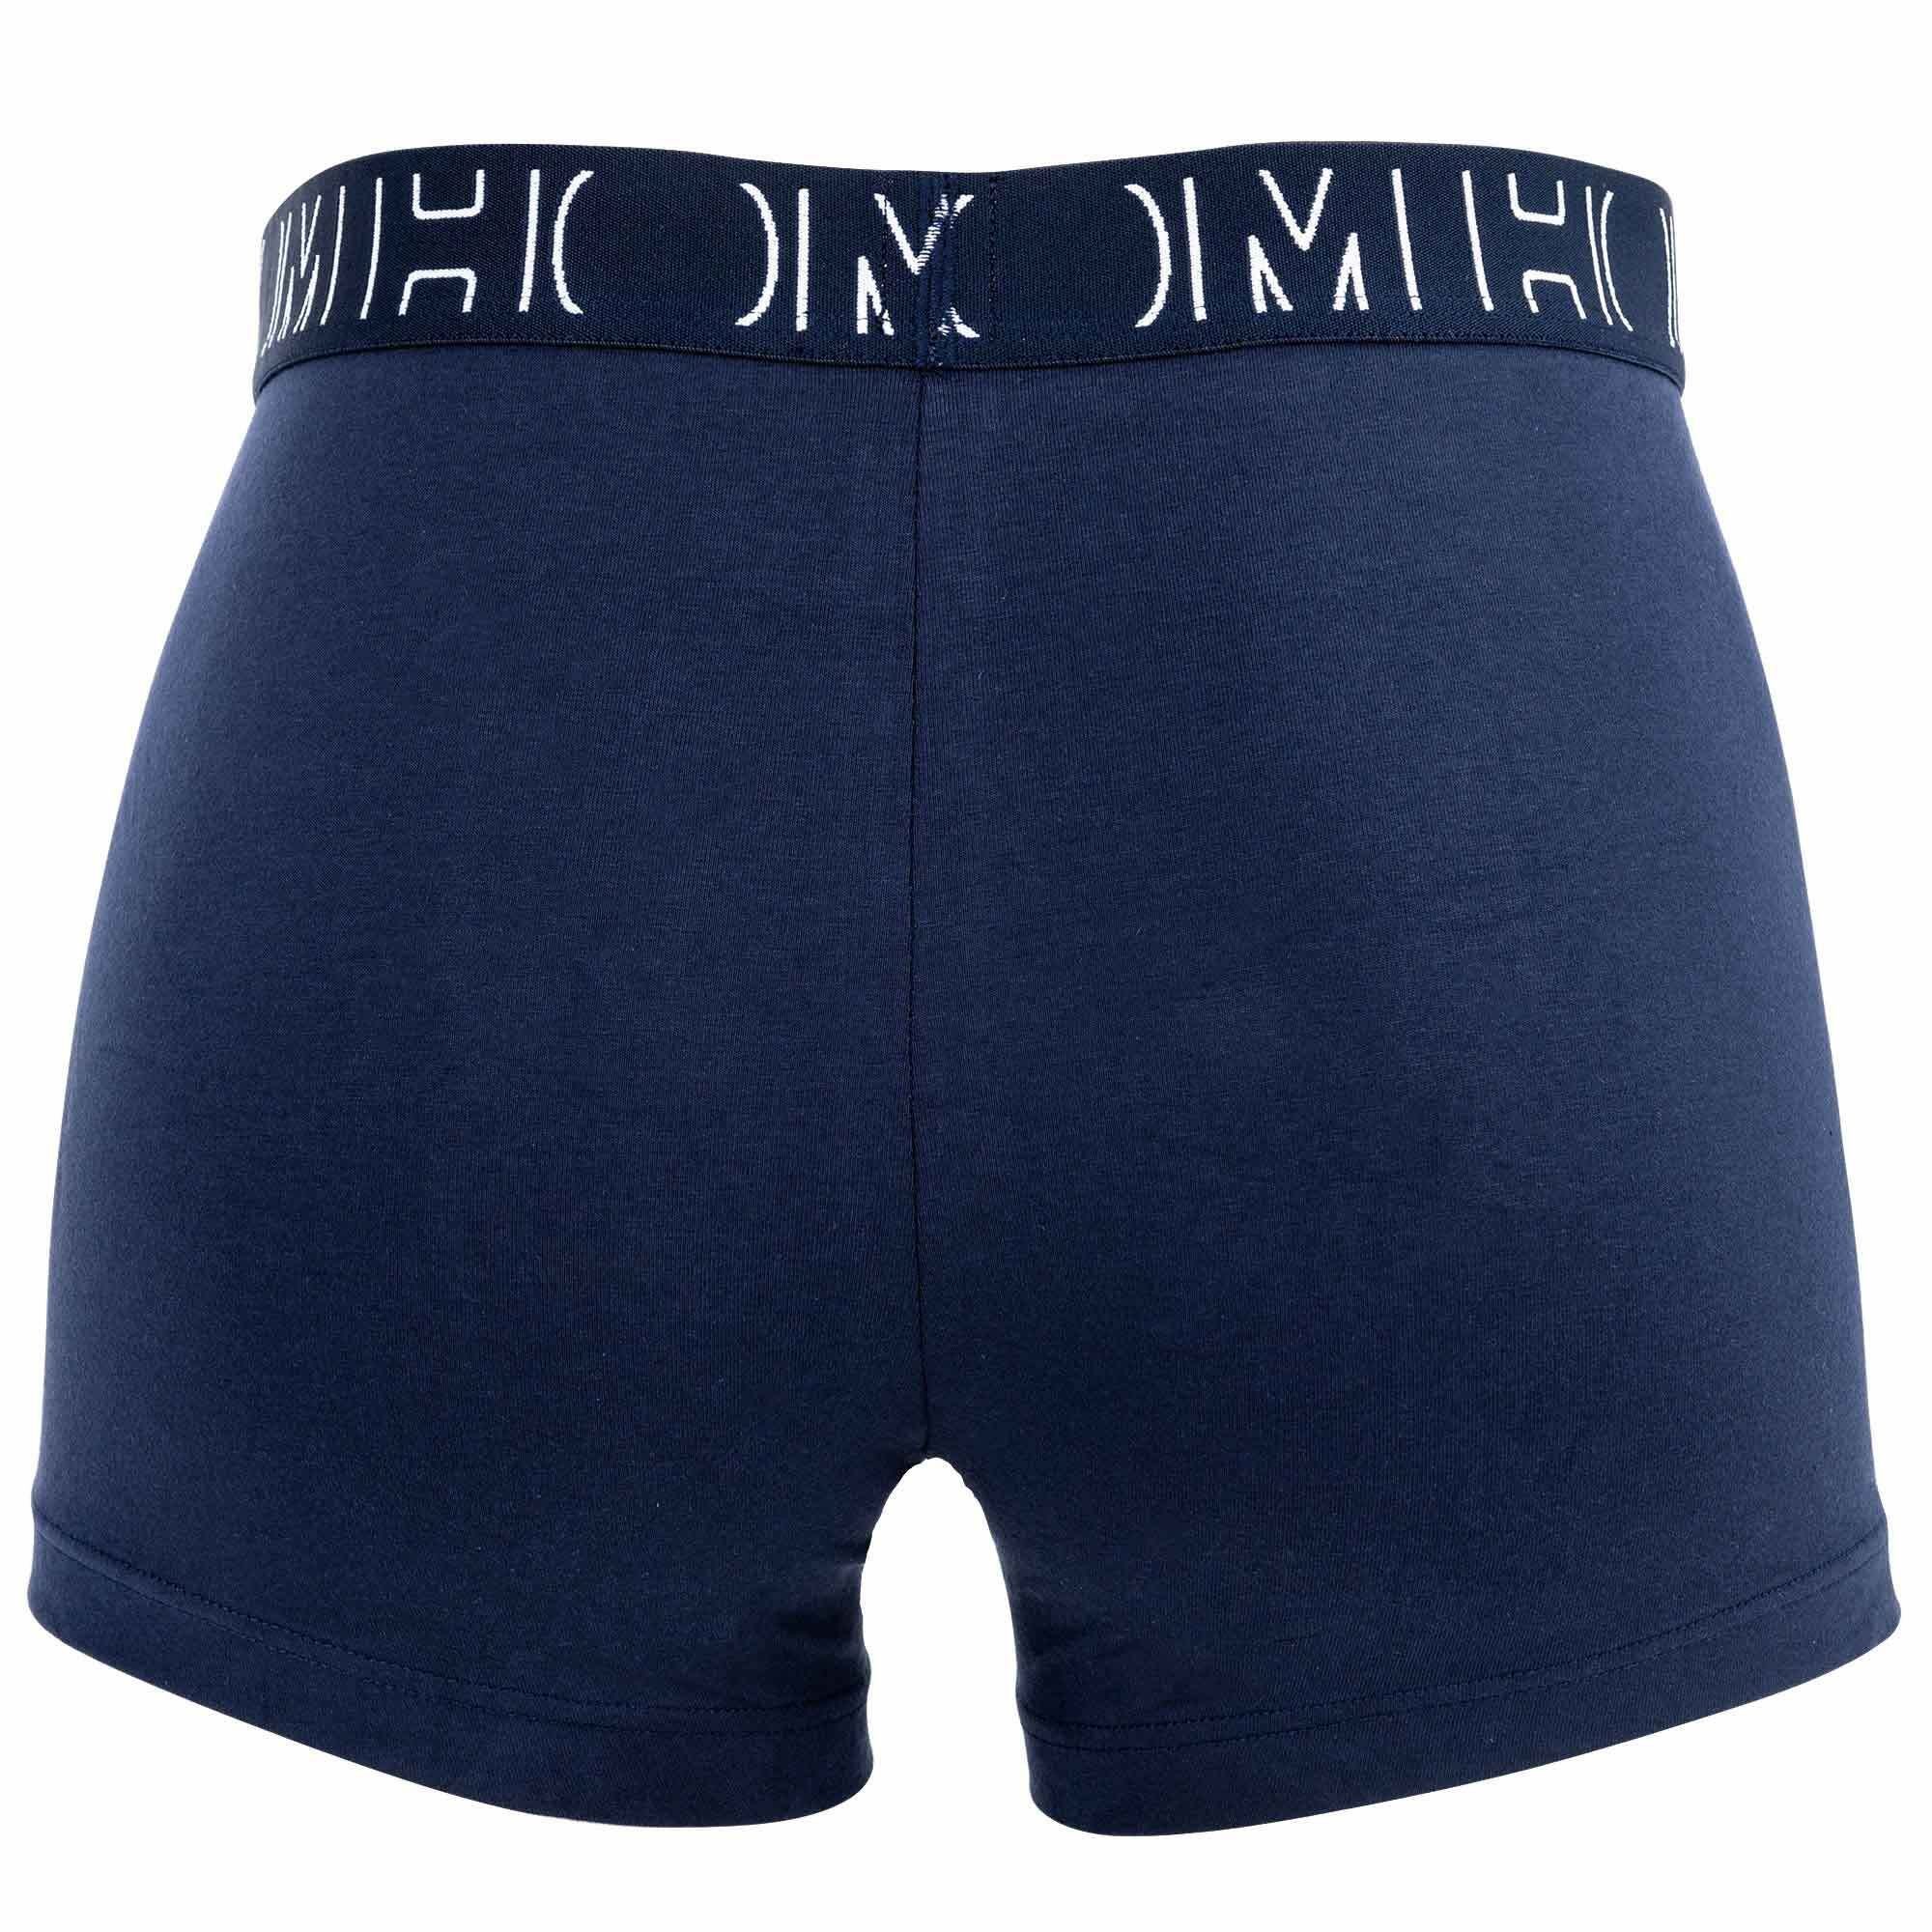 Boxerlines HOM - Blau Hom Pack 2er Herren #2 Boxer Boxer Shorts,